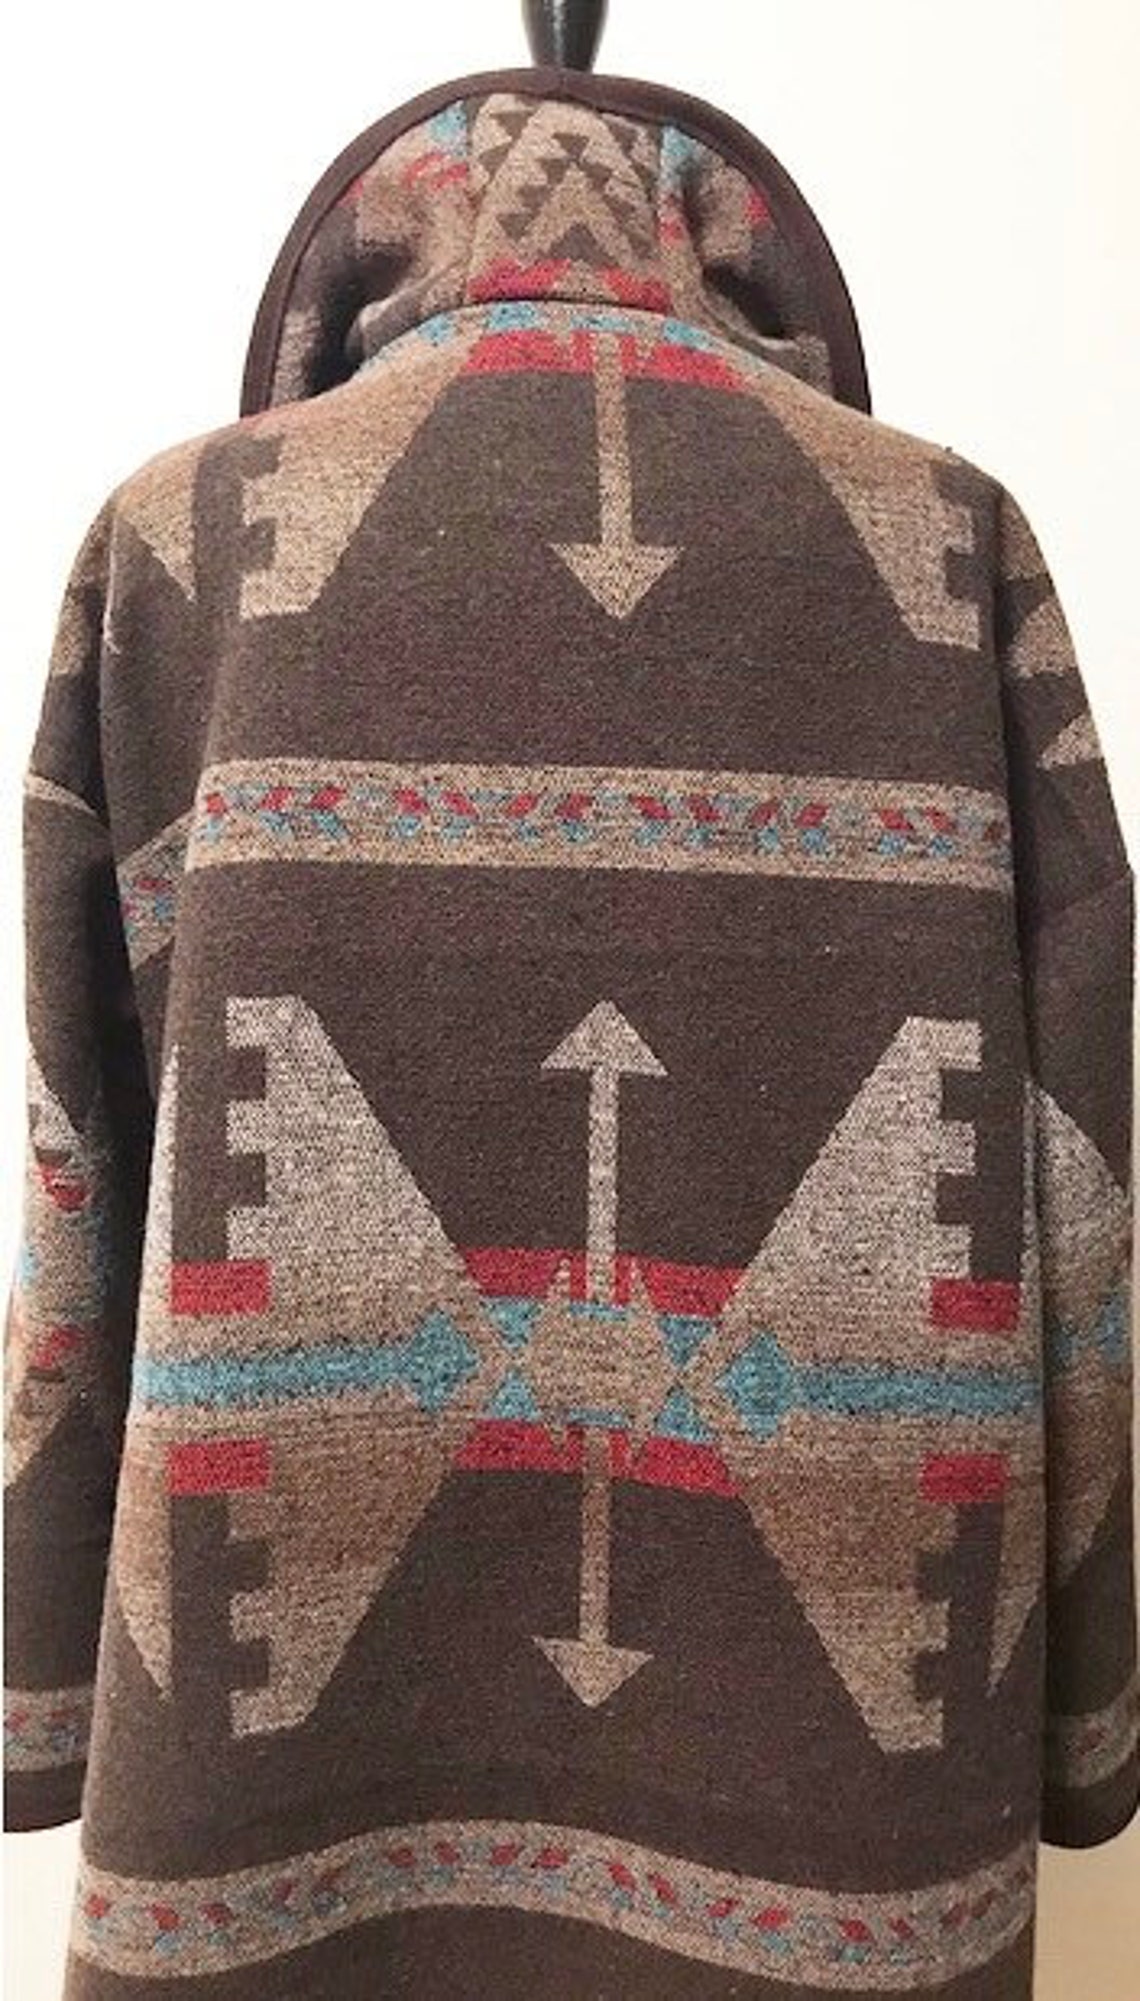 Wool Blend Cardigan Coat in Southwest Print Brown Tones | Etsy